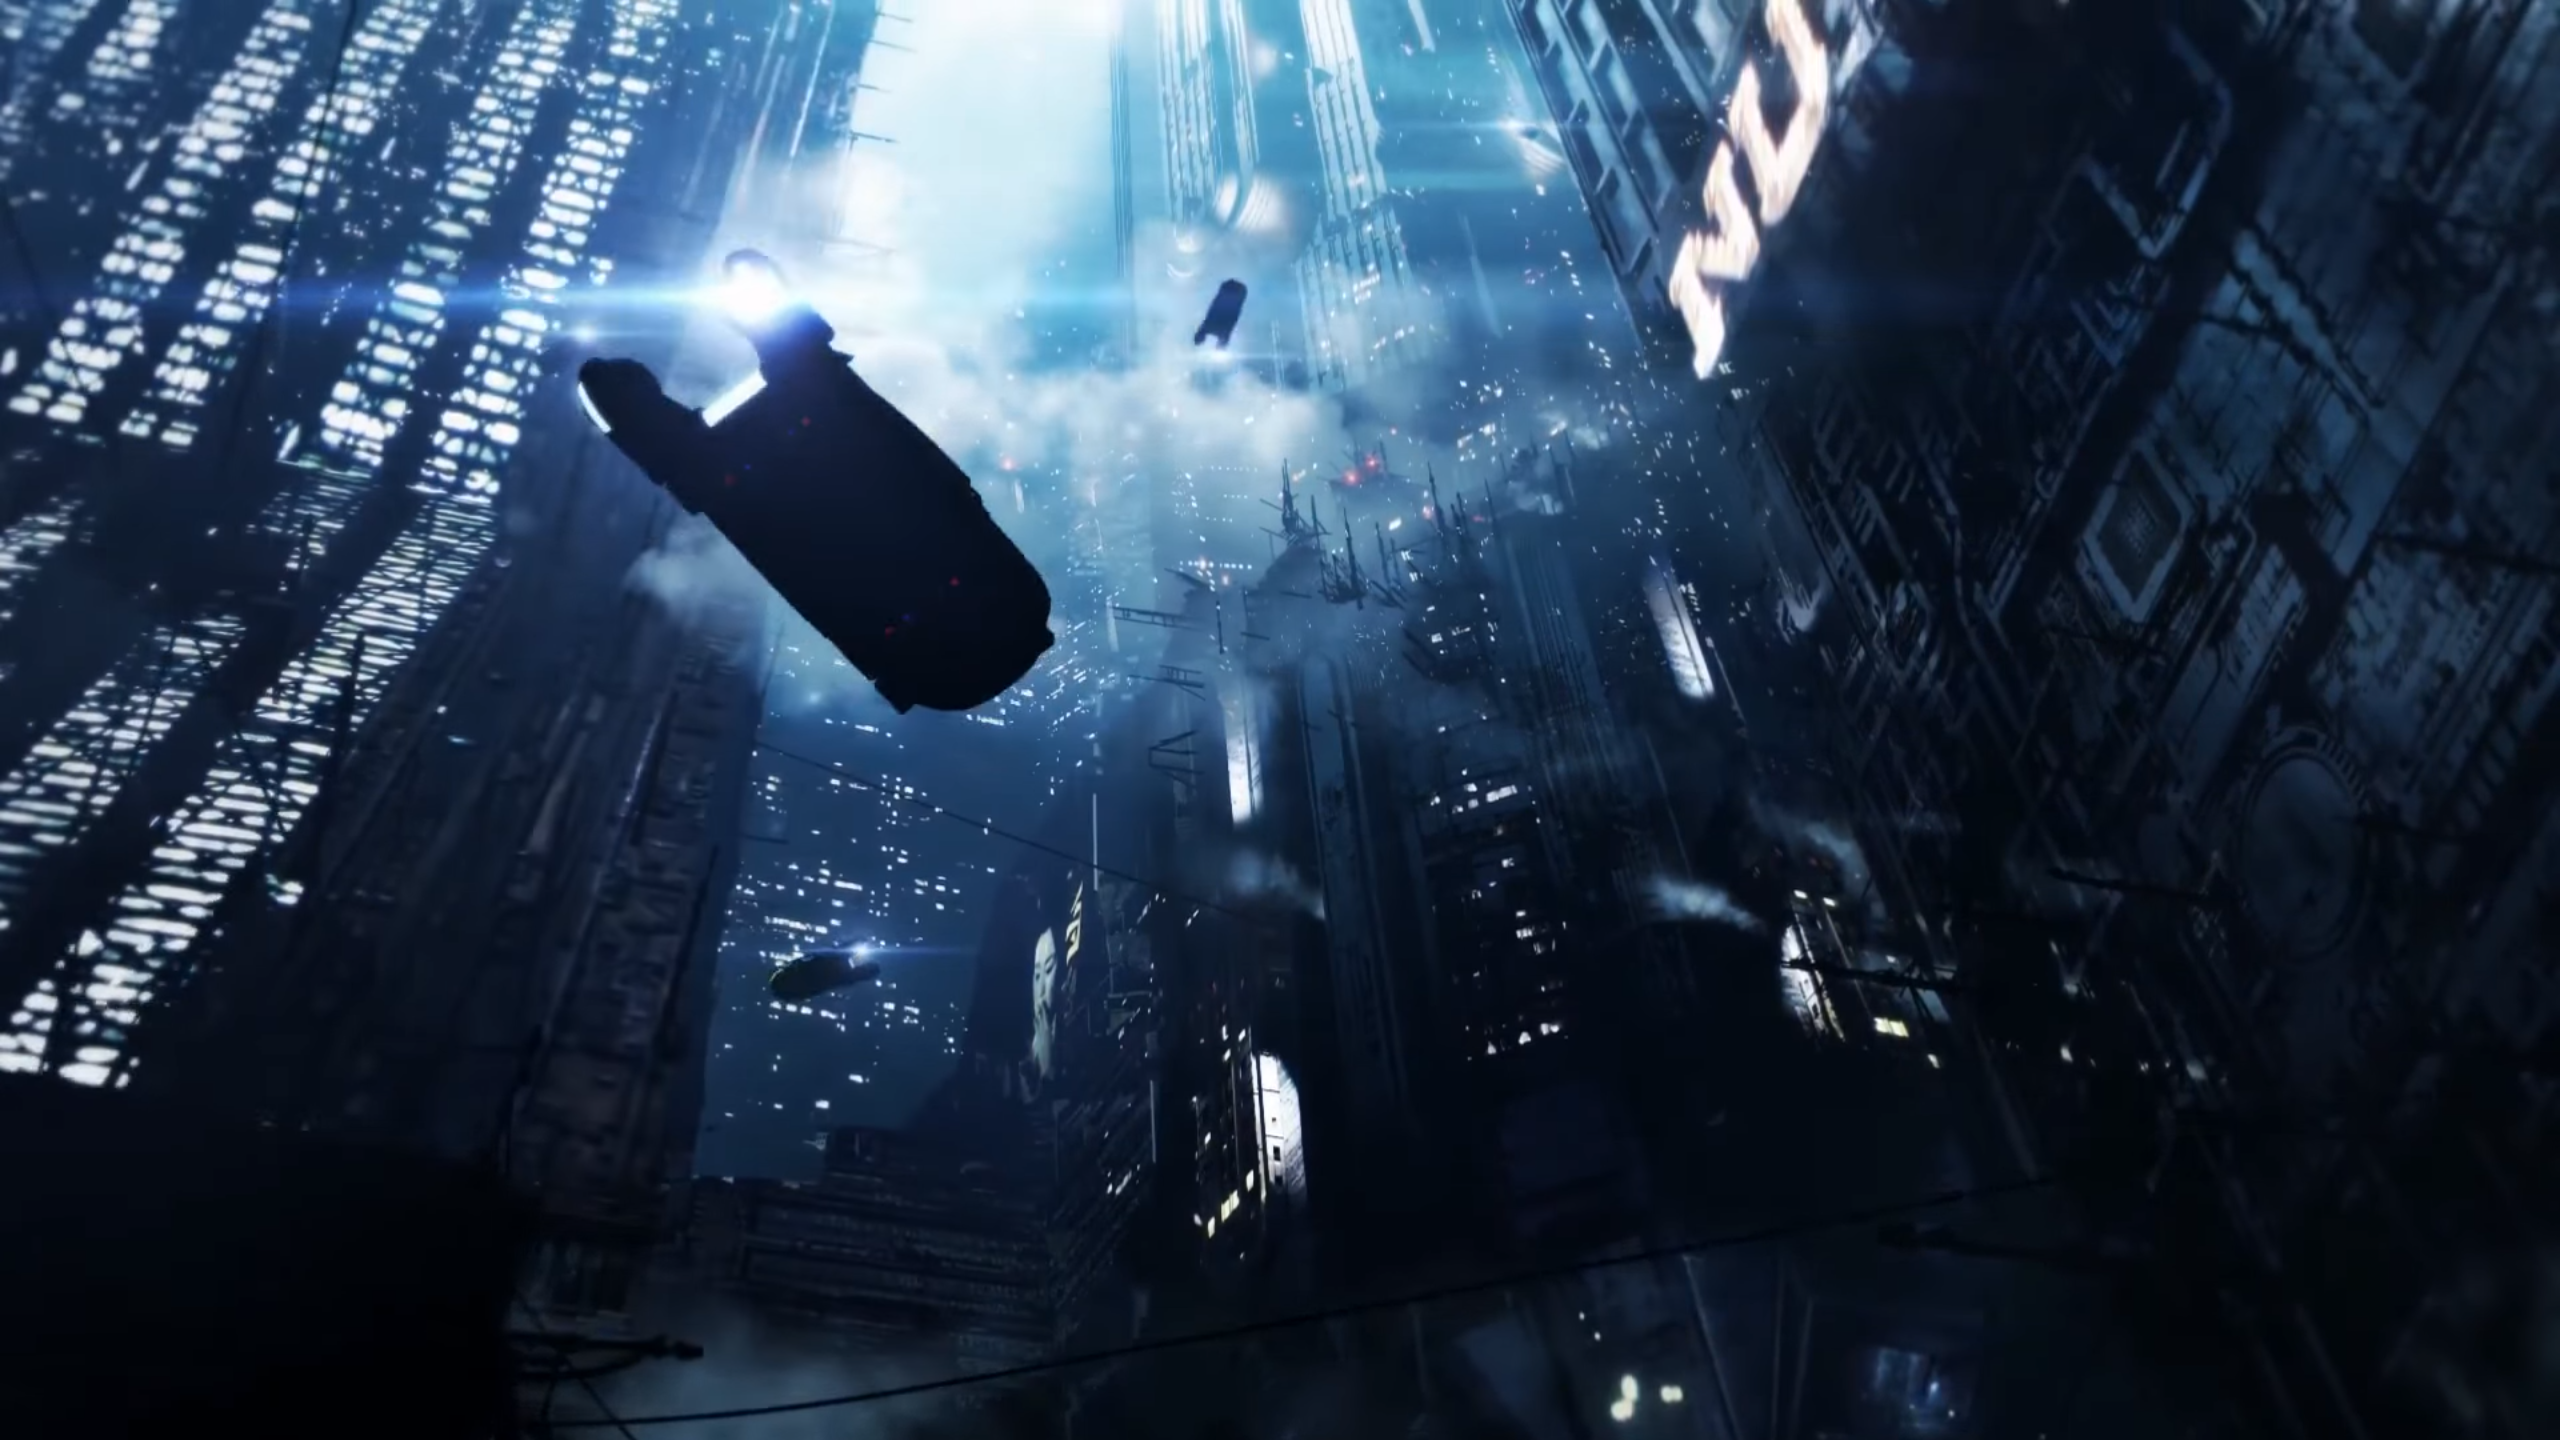 Blade Runner 2049 Visuals - HD Wallpaper 